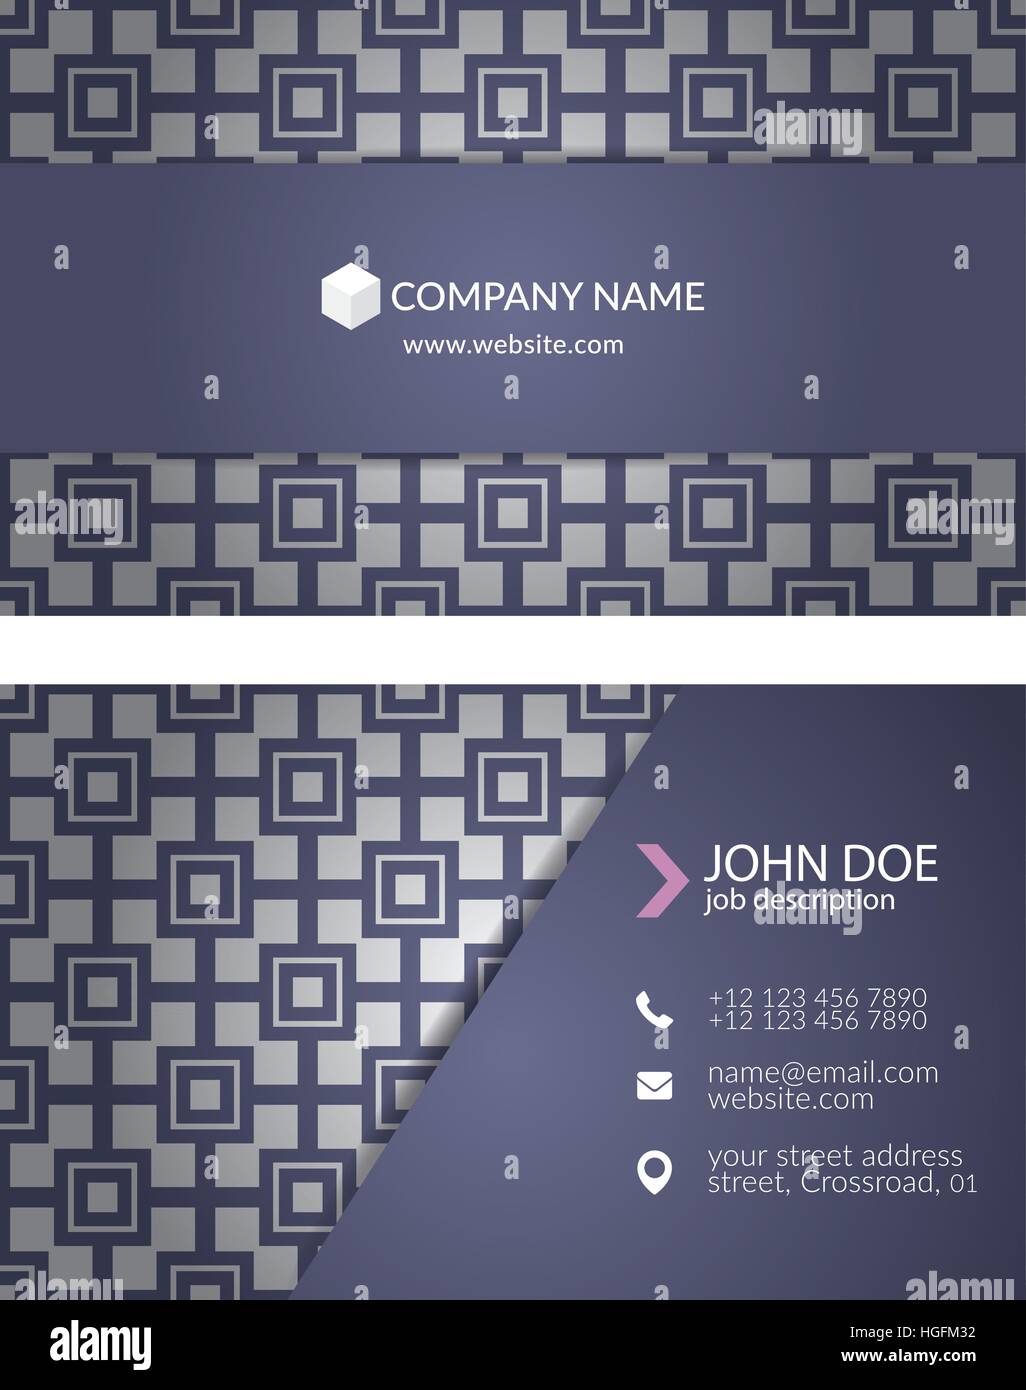 Elegante business card modello di progettazione per il design creativo. Illustrazione Vettoriale